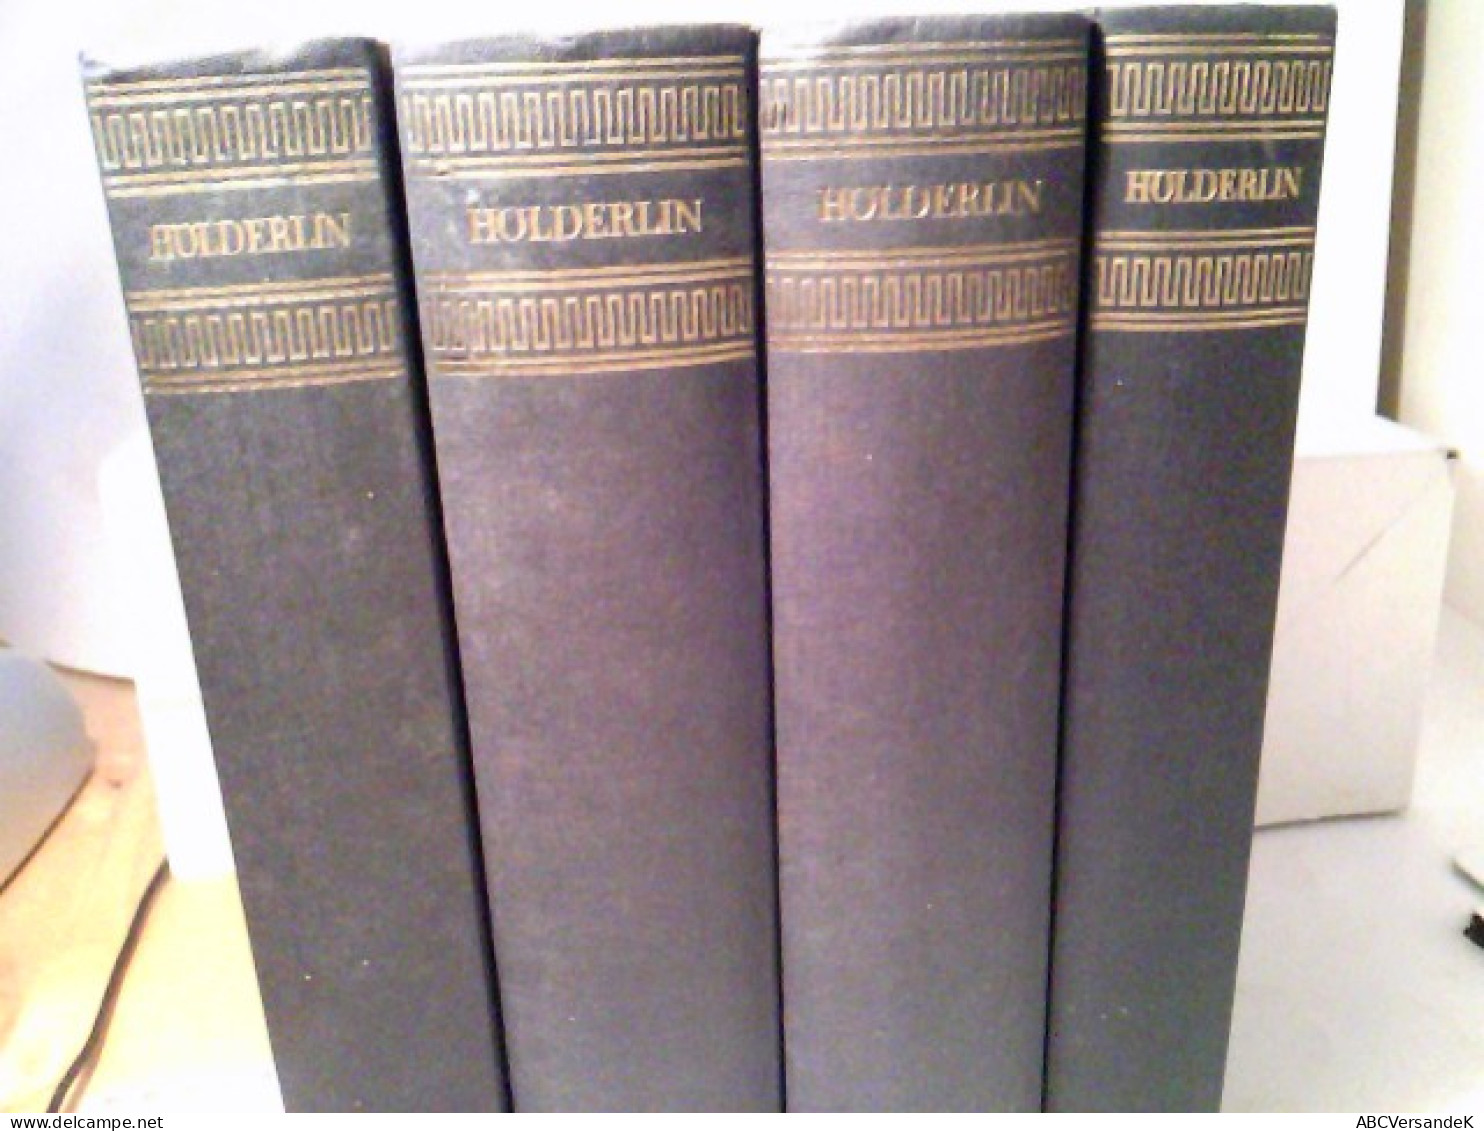 Konvolut: 4 Div. Bände Hölderlin. Sämtliche Werke - Historisch Kritische Ausgabe. - German Authors